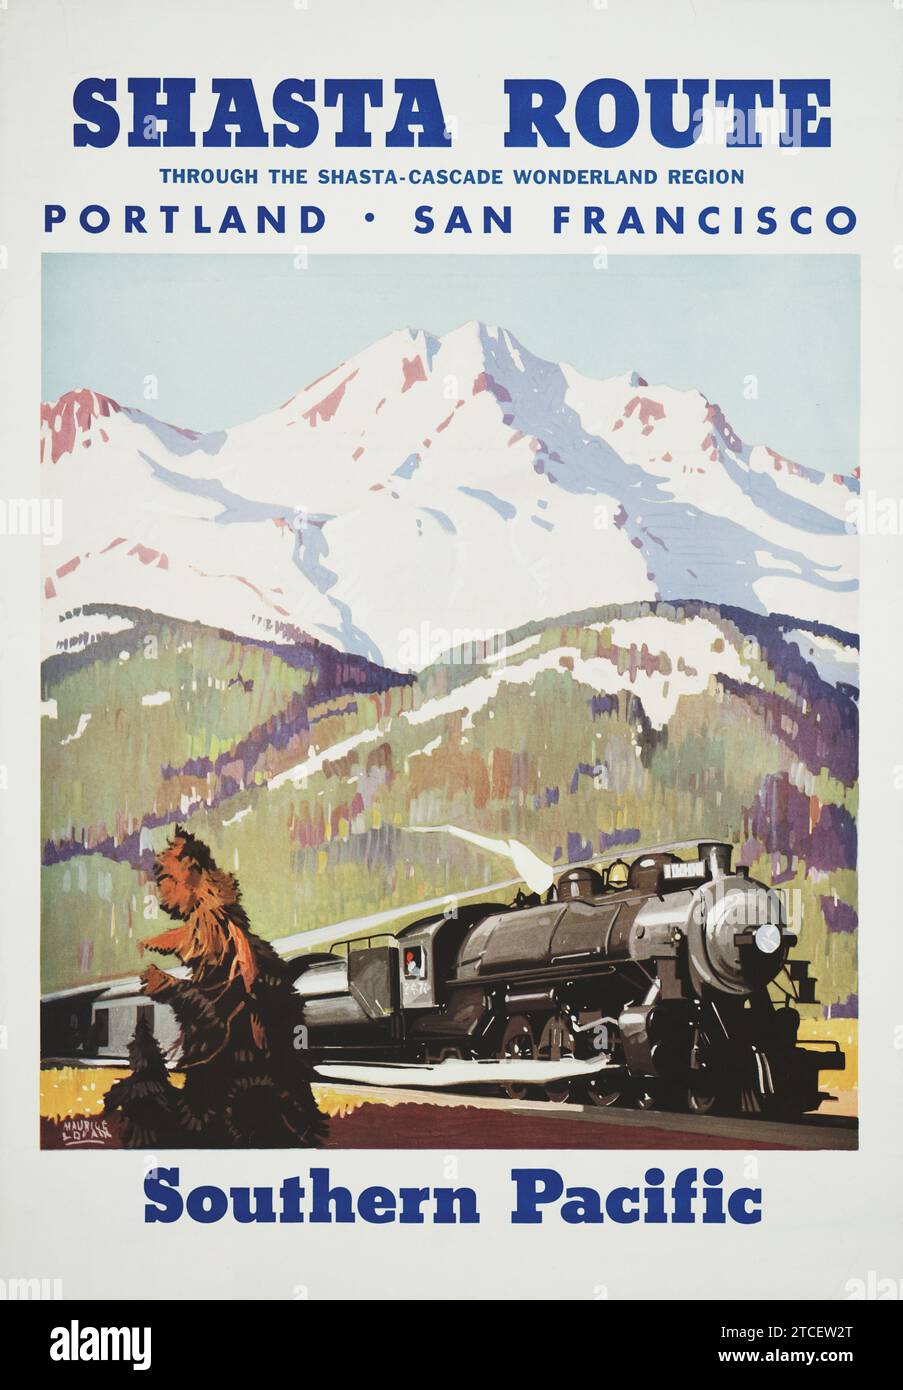 Route de Shasta à travers la région des merveilles de Shasta-Cascade Pacifique Sud - Maurice Logan Artwork, années 1950 - une locomotive de train à vapeur Banque D'Images